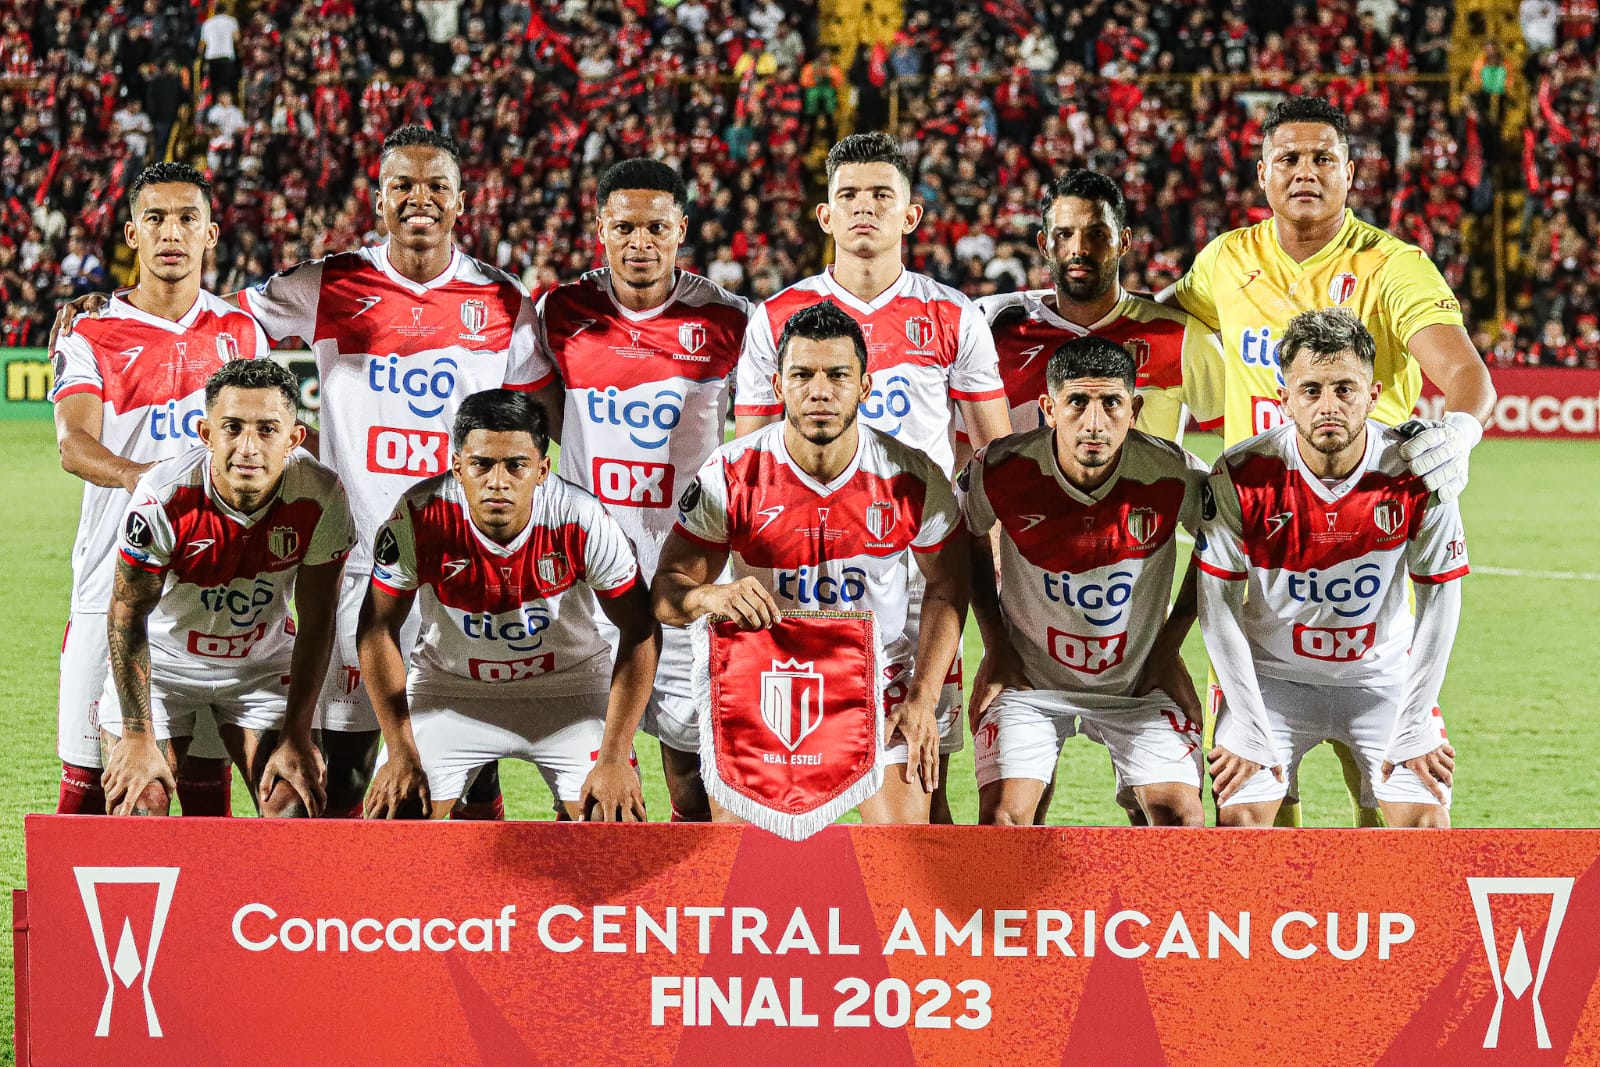 El Real Estelí será el rival del CAI en la semifinal de la Copa